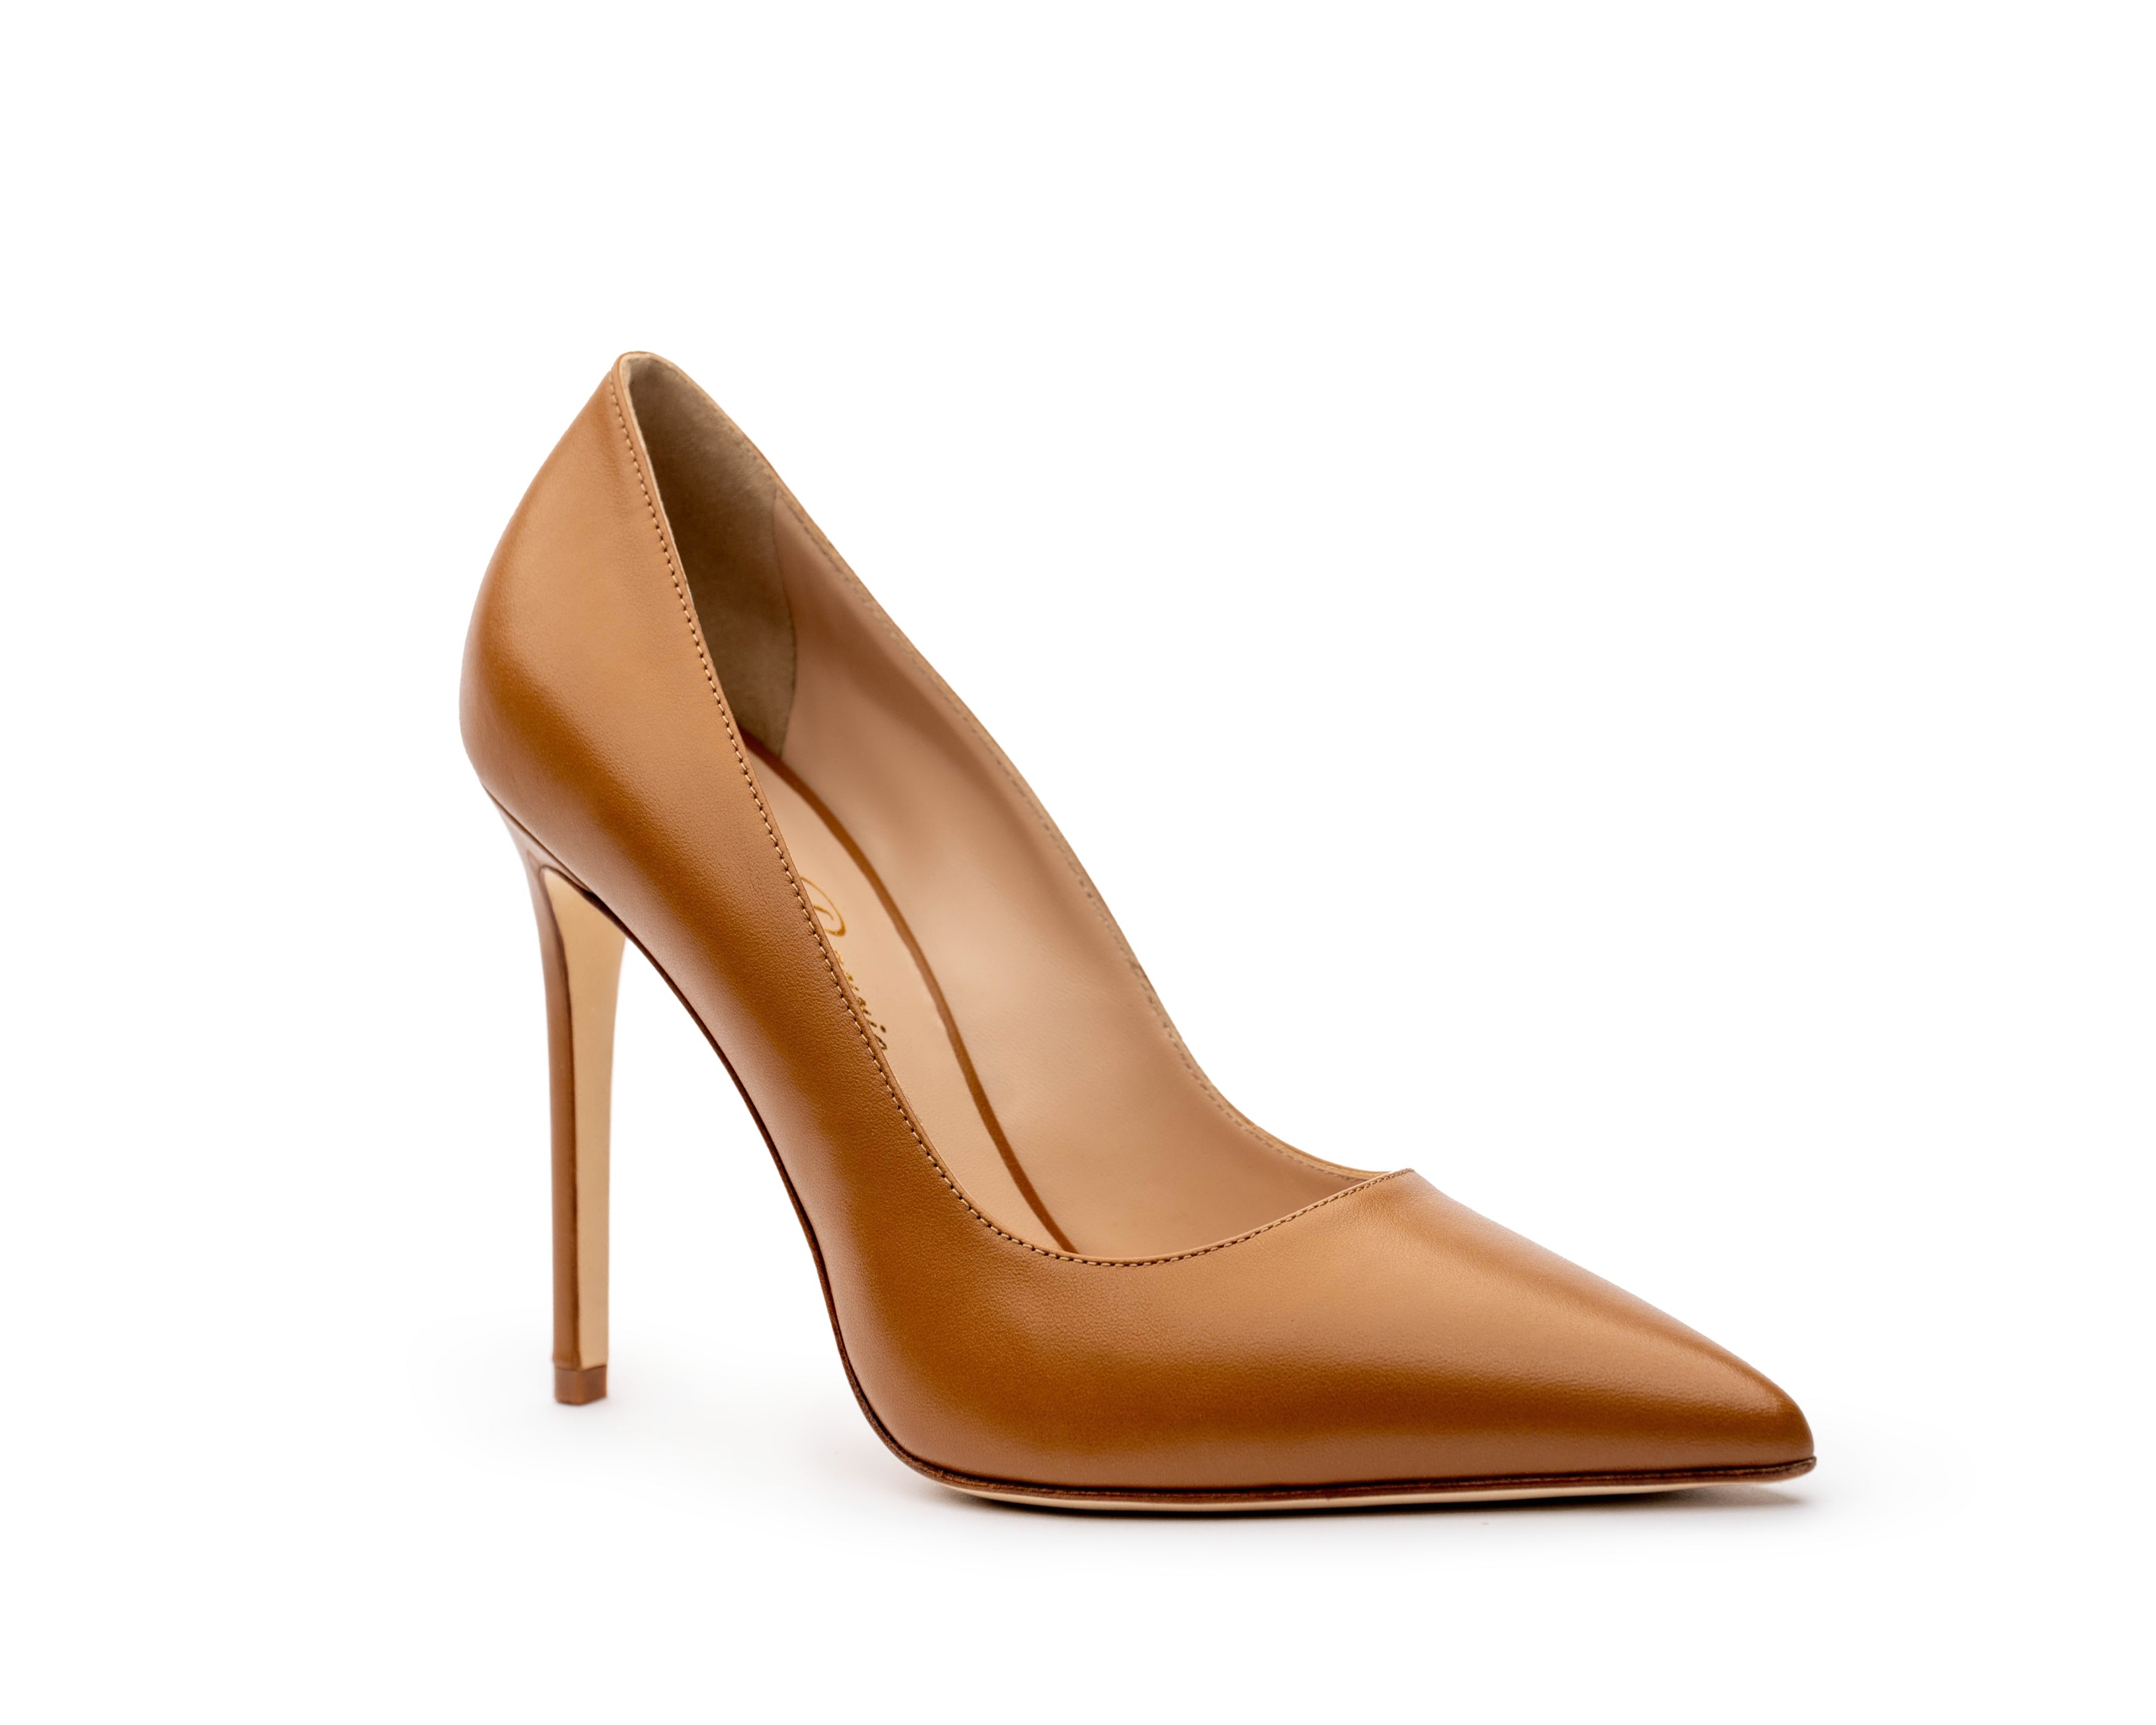 Vintage 1970s-80s Candies Brown High heel Slides Size 5 | eBay